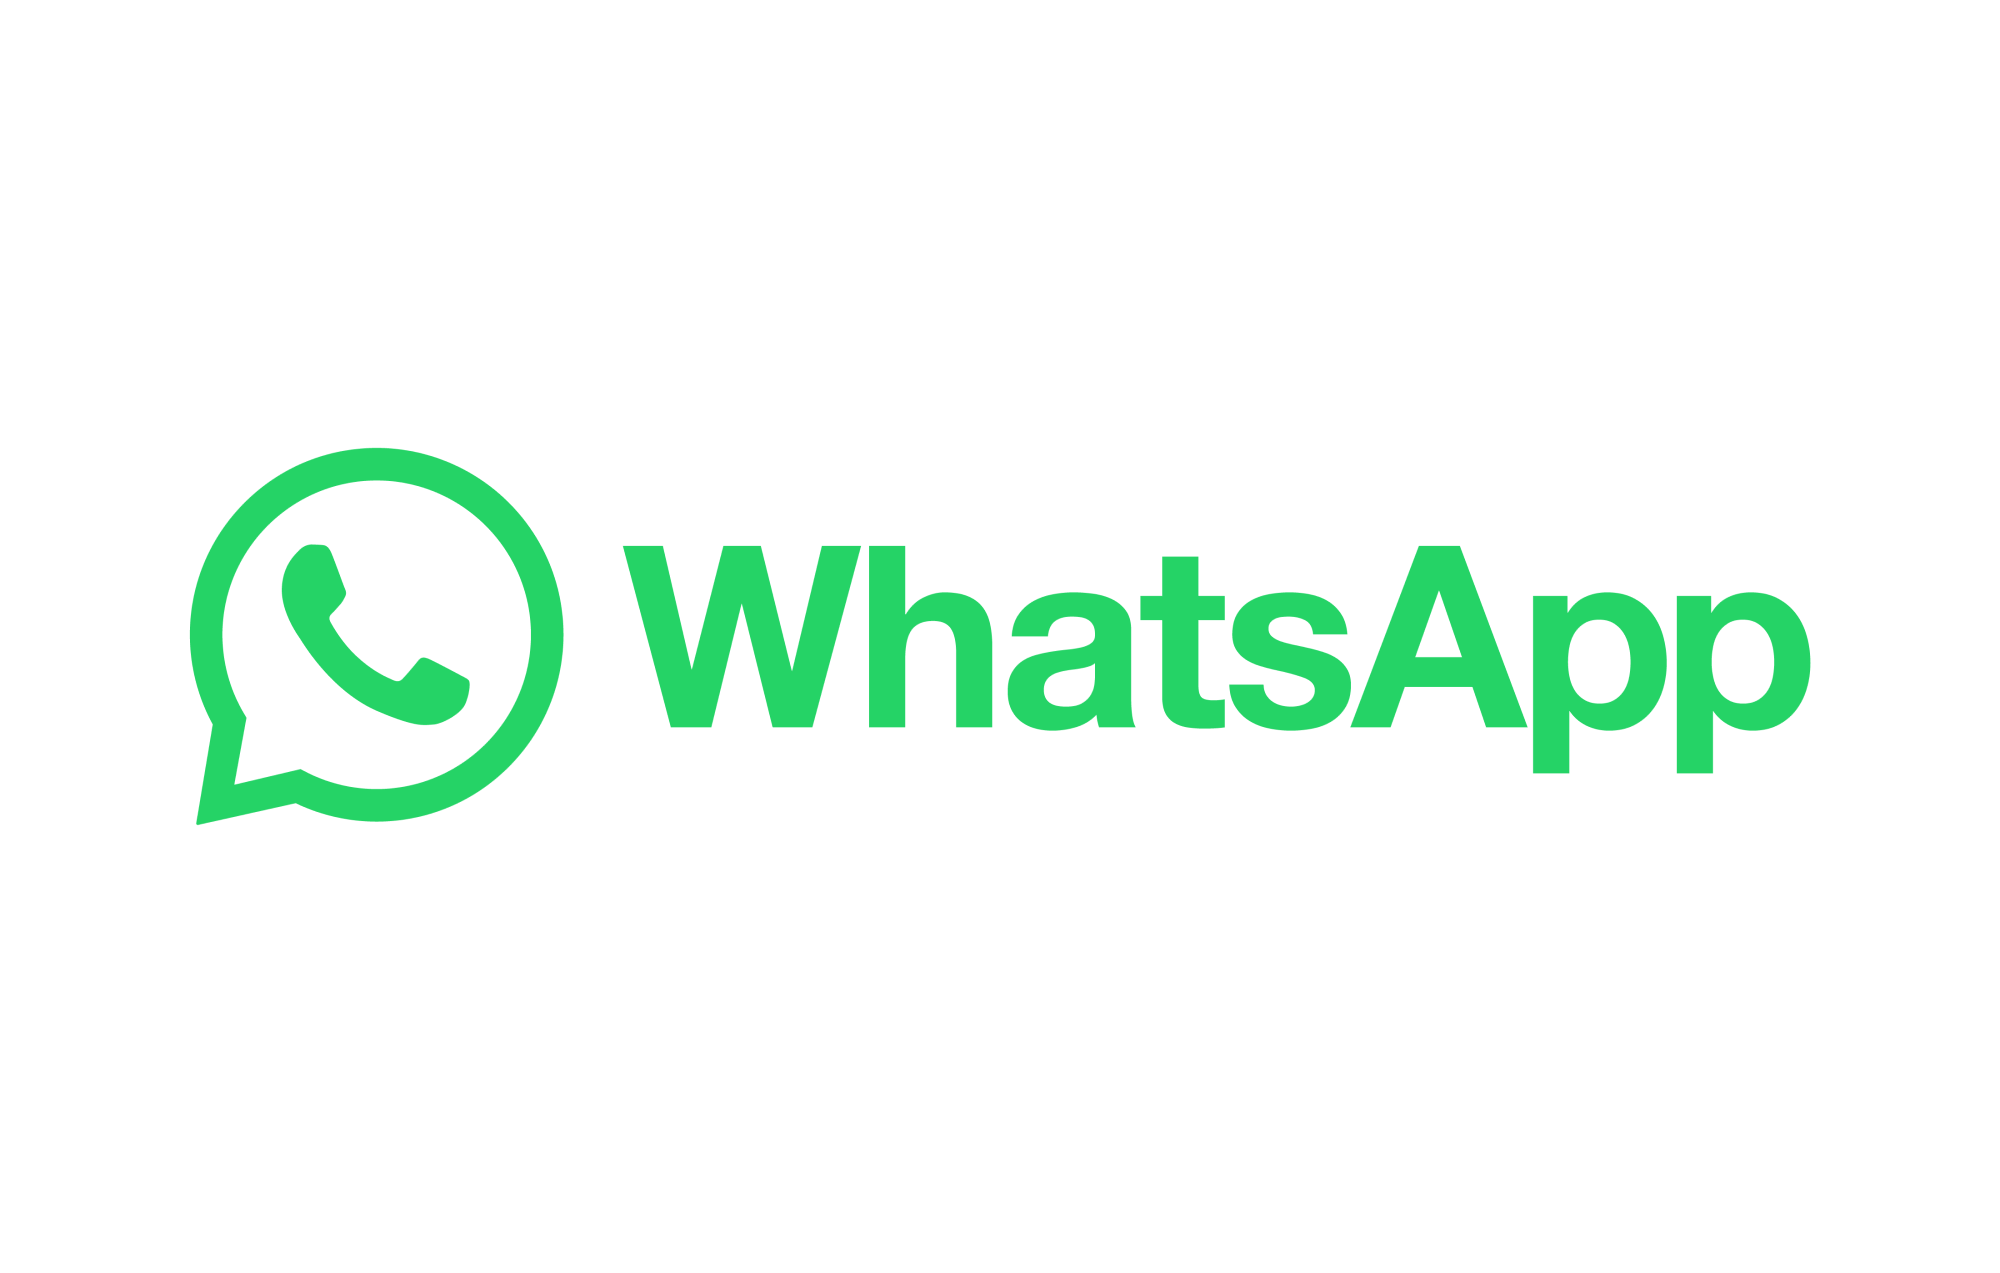 WhatsApp View One yakında kaybolan metinleri gösterebilir